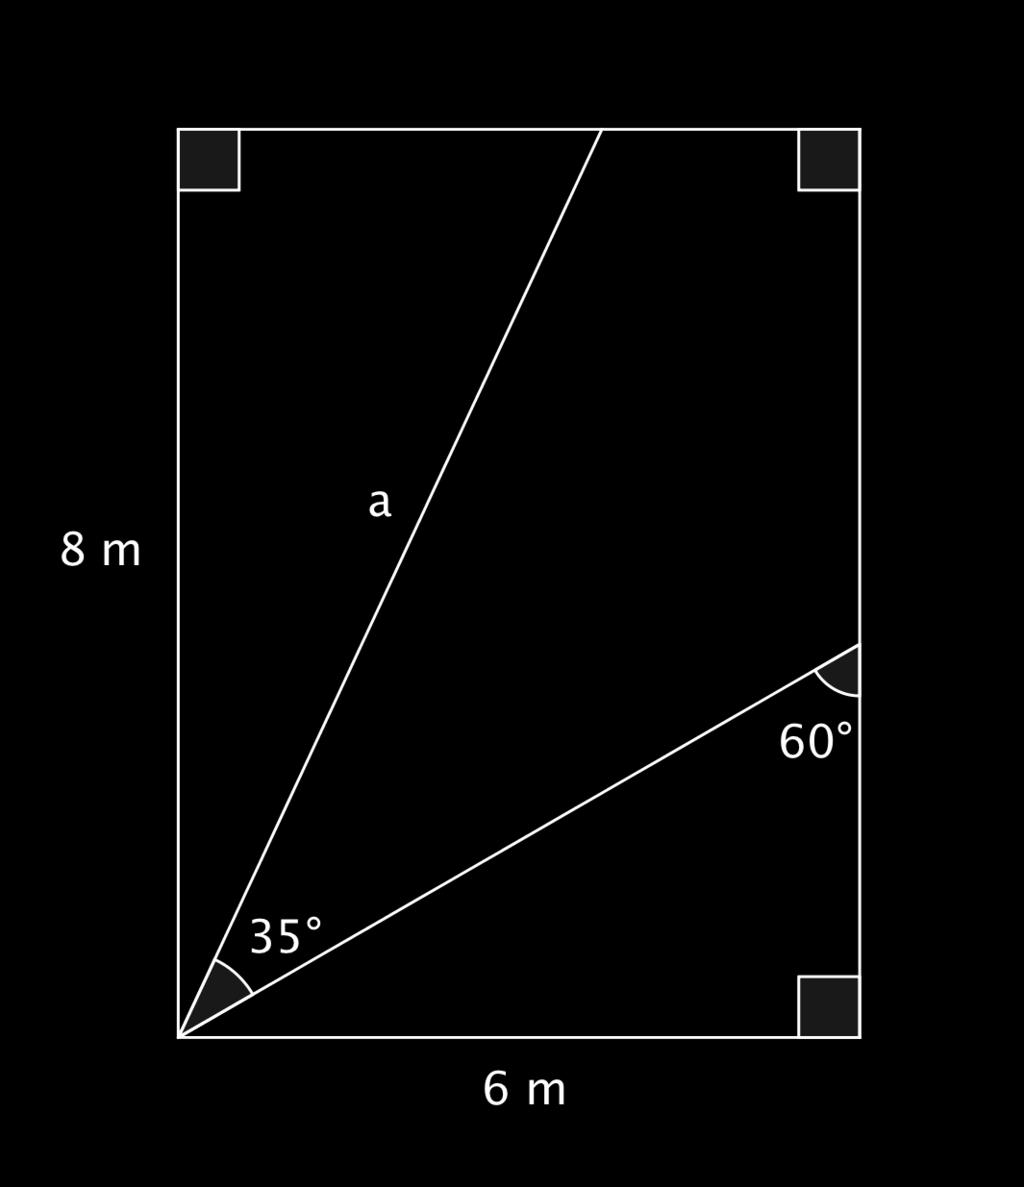 Ajokortti 1b: Geometria Harjoitustehtävä 4. Monivalitatehtävä (valitse yksi) Millä lausekkeella saadaan sivun a pituus?